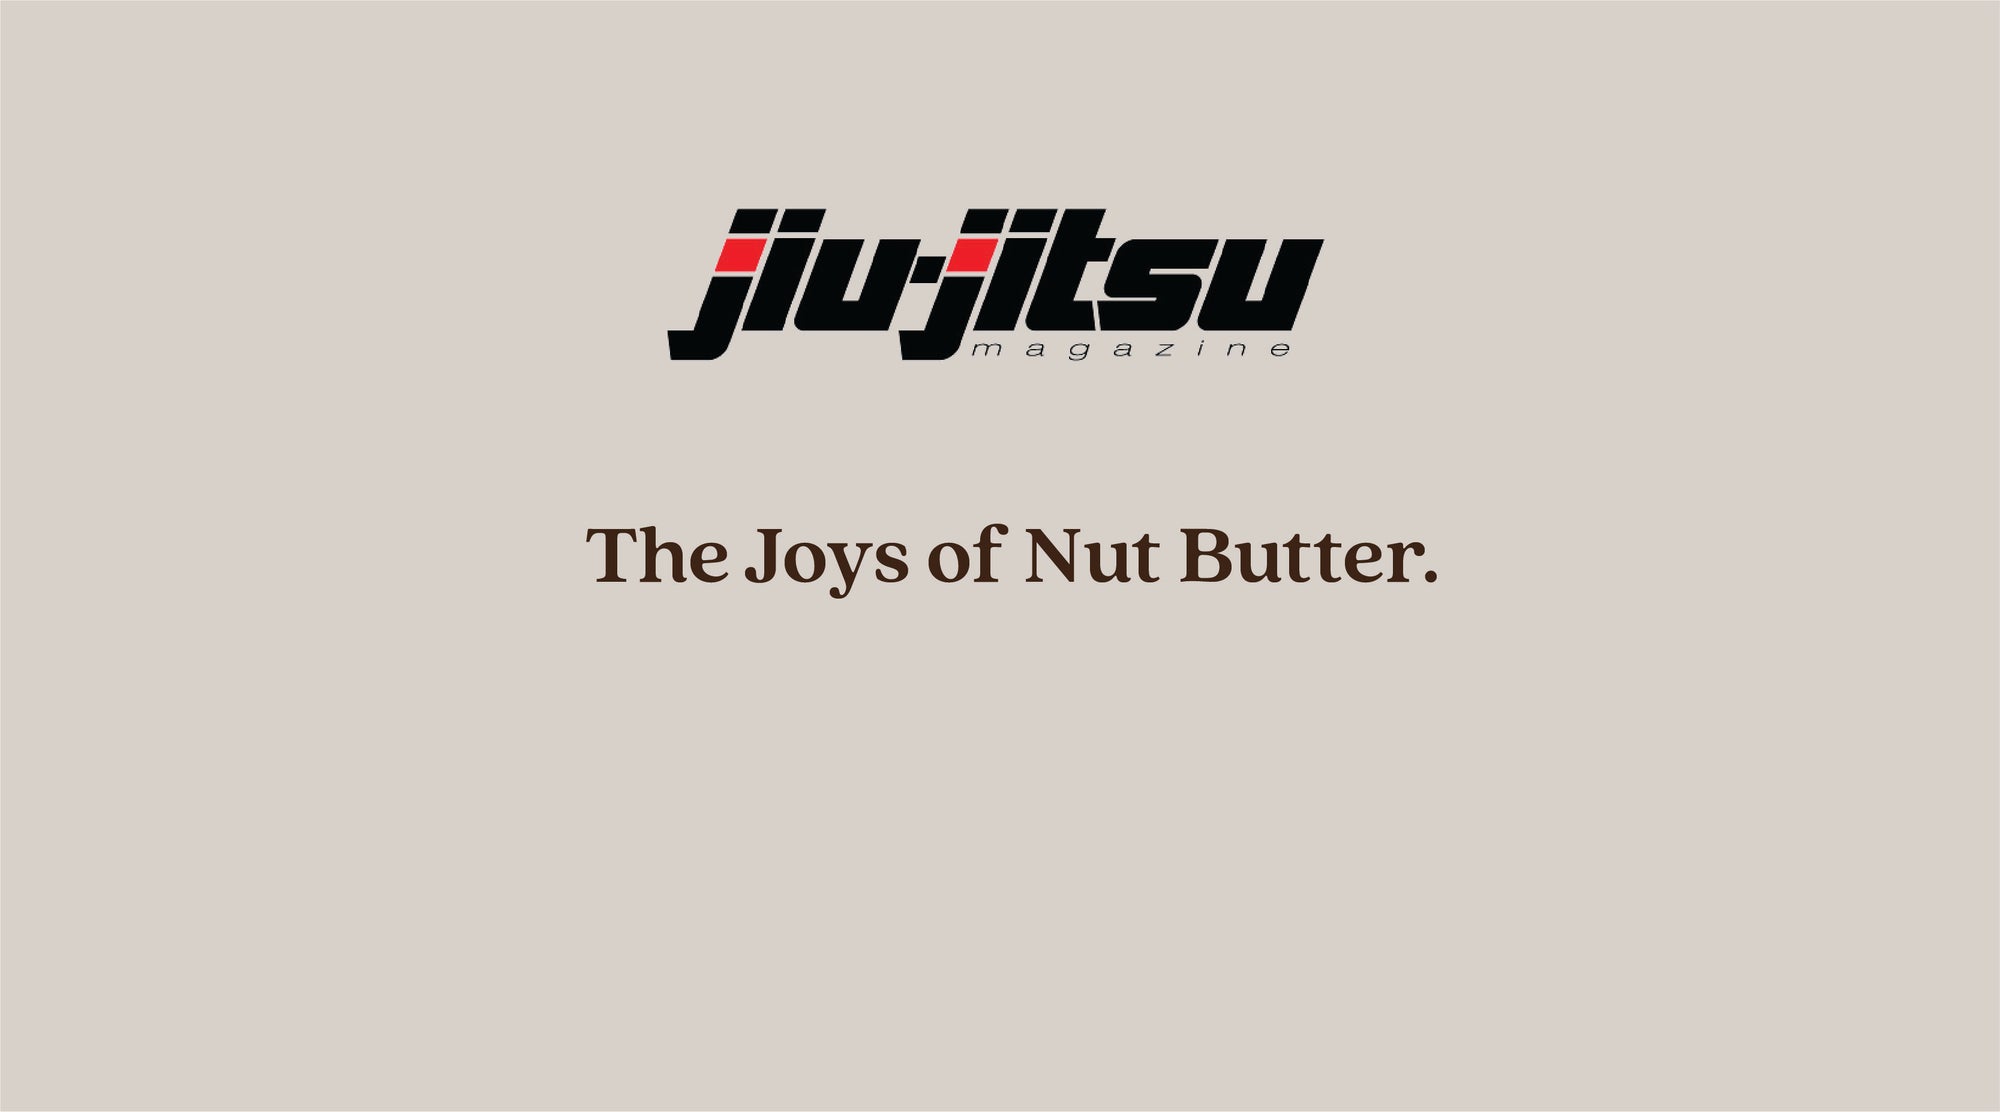 Jiu-Jitsu Magazine